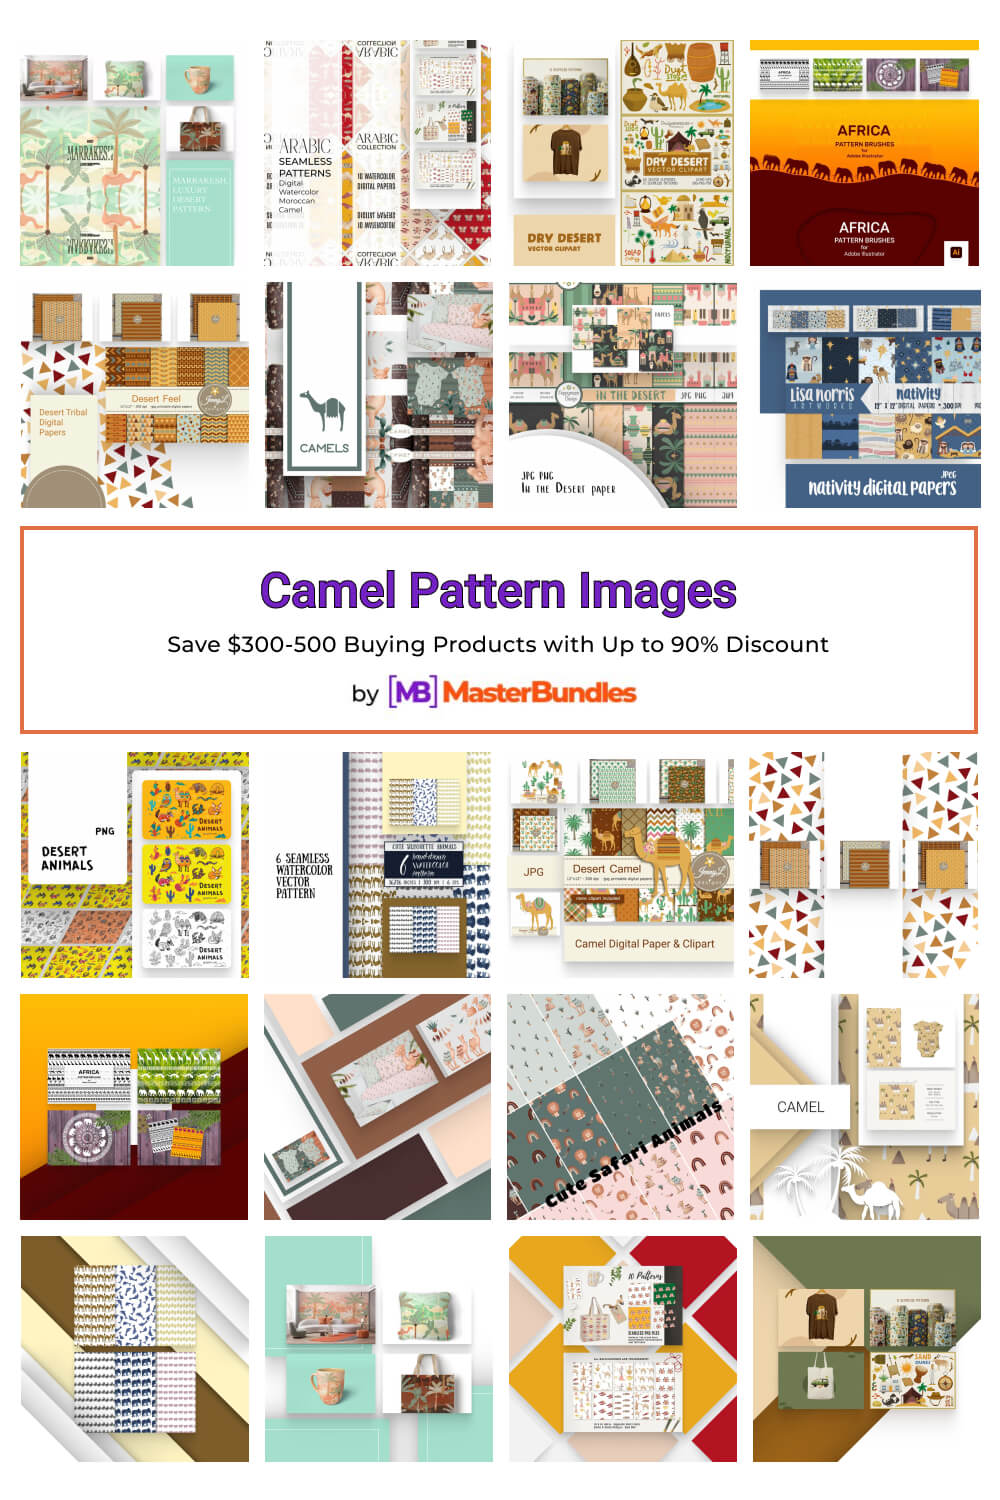 camel pattern images pinterest image.